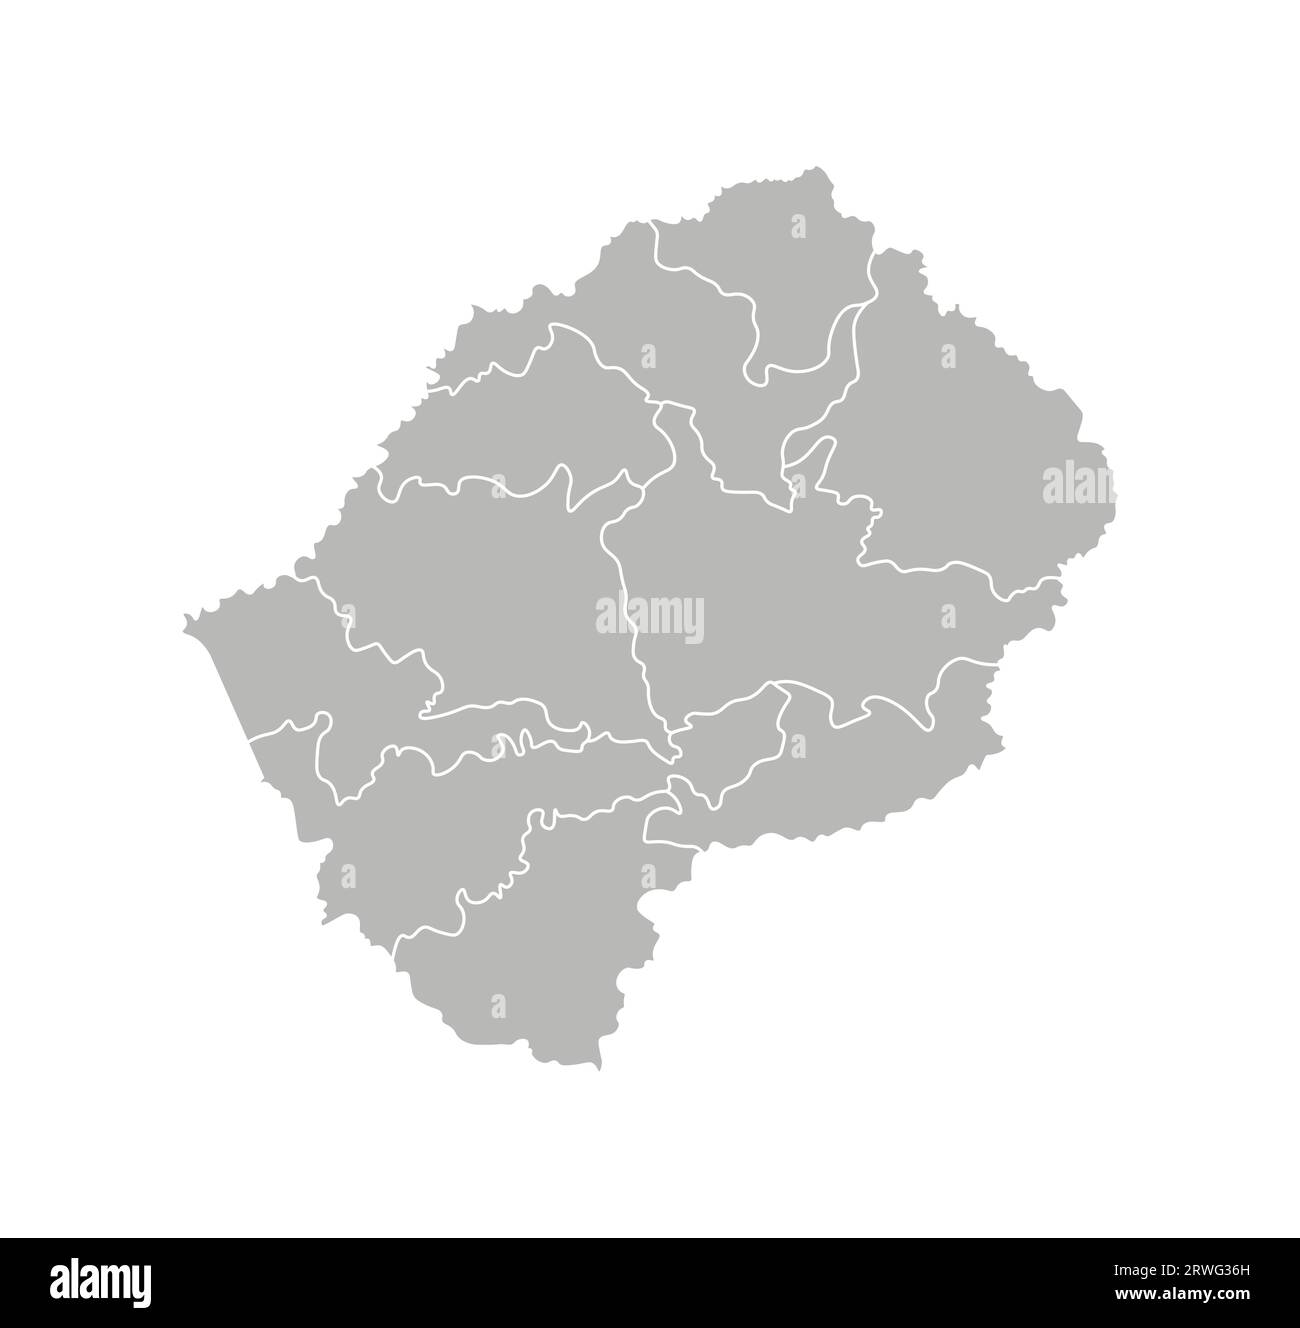 Vektorisolierte Darstellung einer vereinfachten Verwaltungskarte von Lesotho. Grenzen der Bezirke (Regionen). Graue Silhouetten. Weiße Umrandung. Stock Vektor